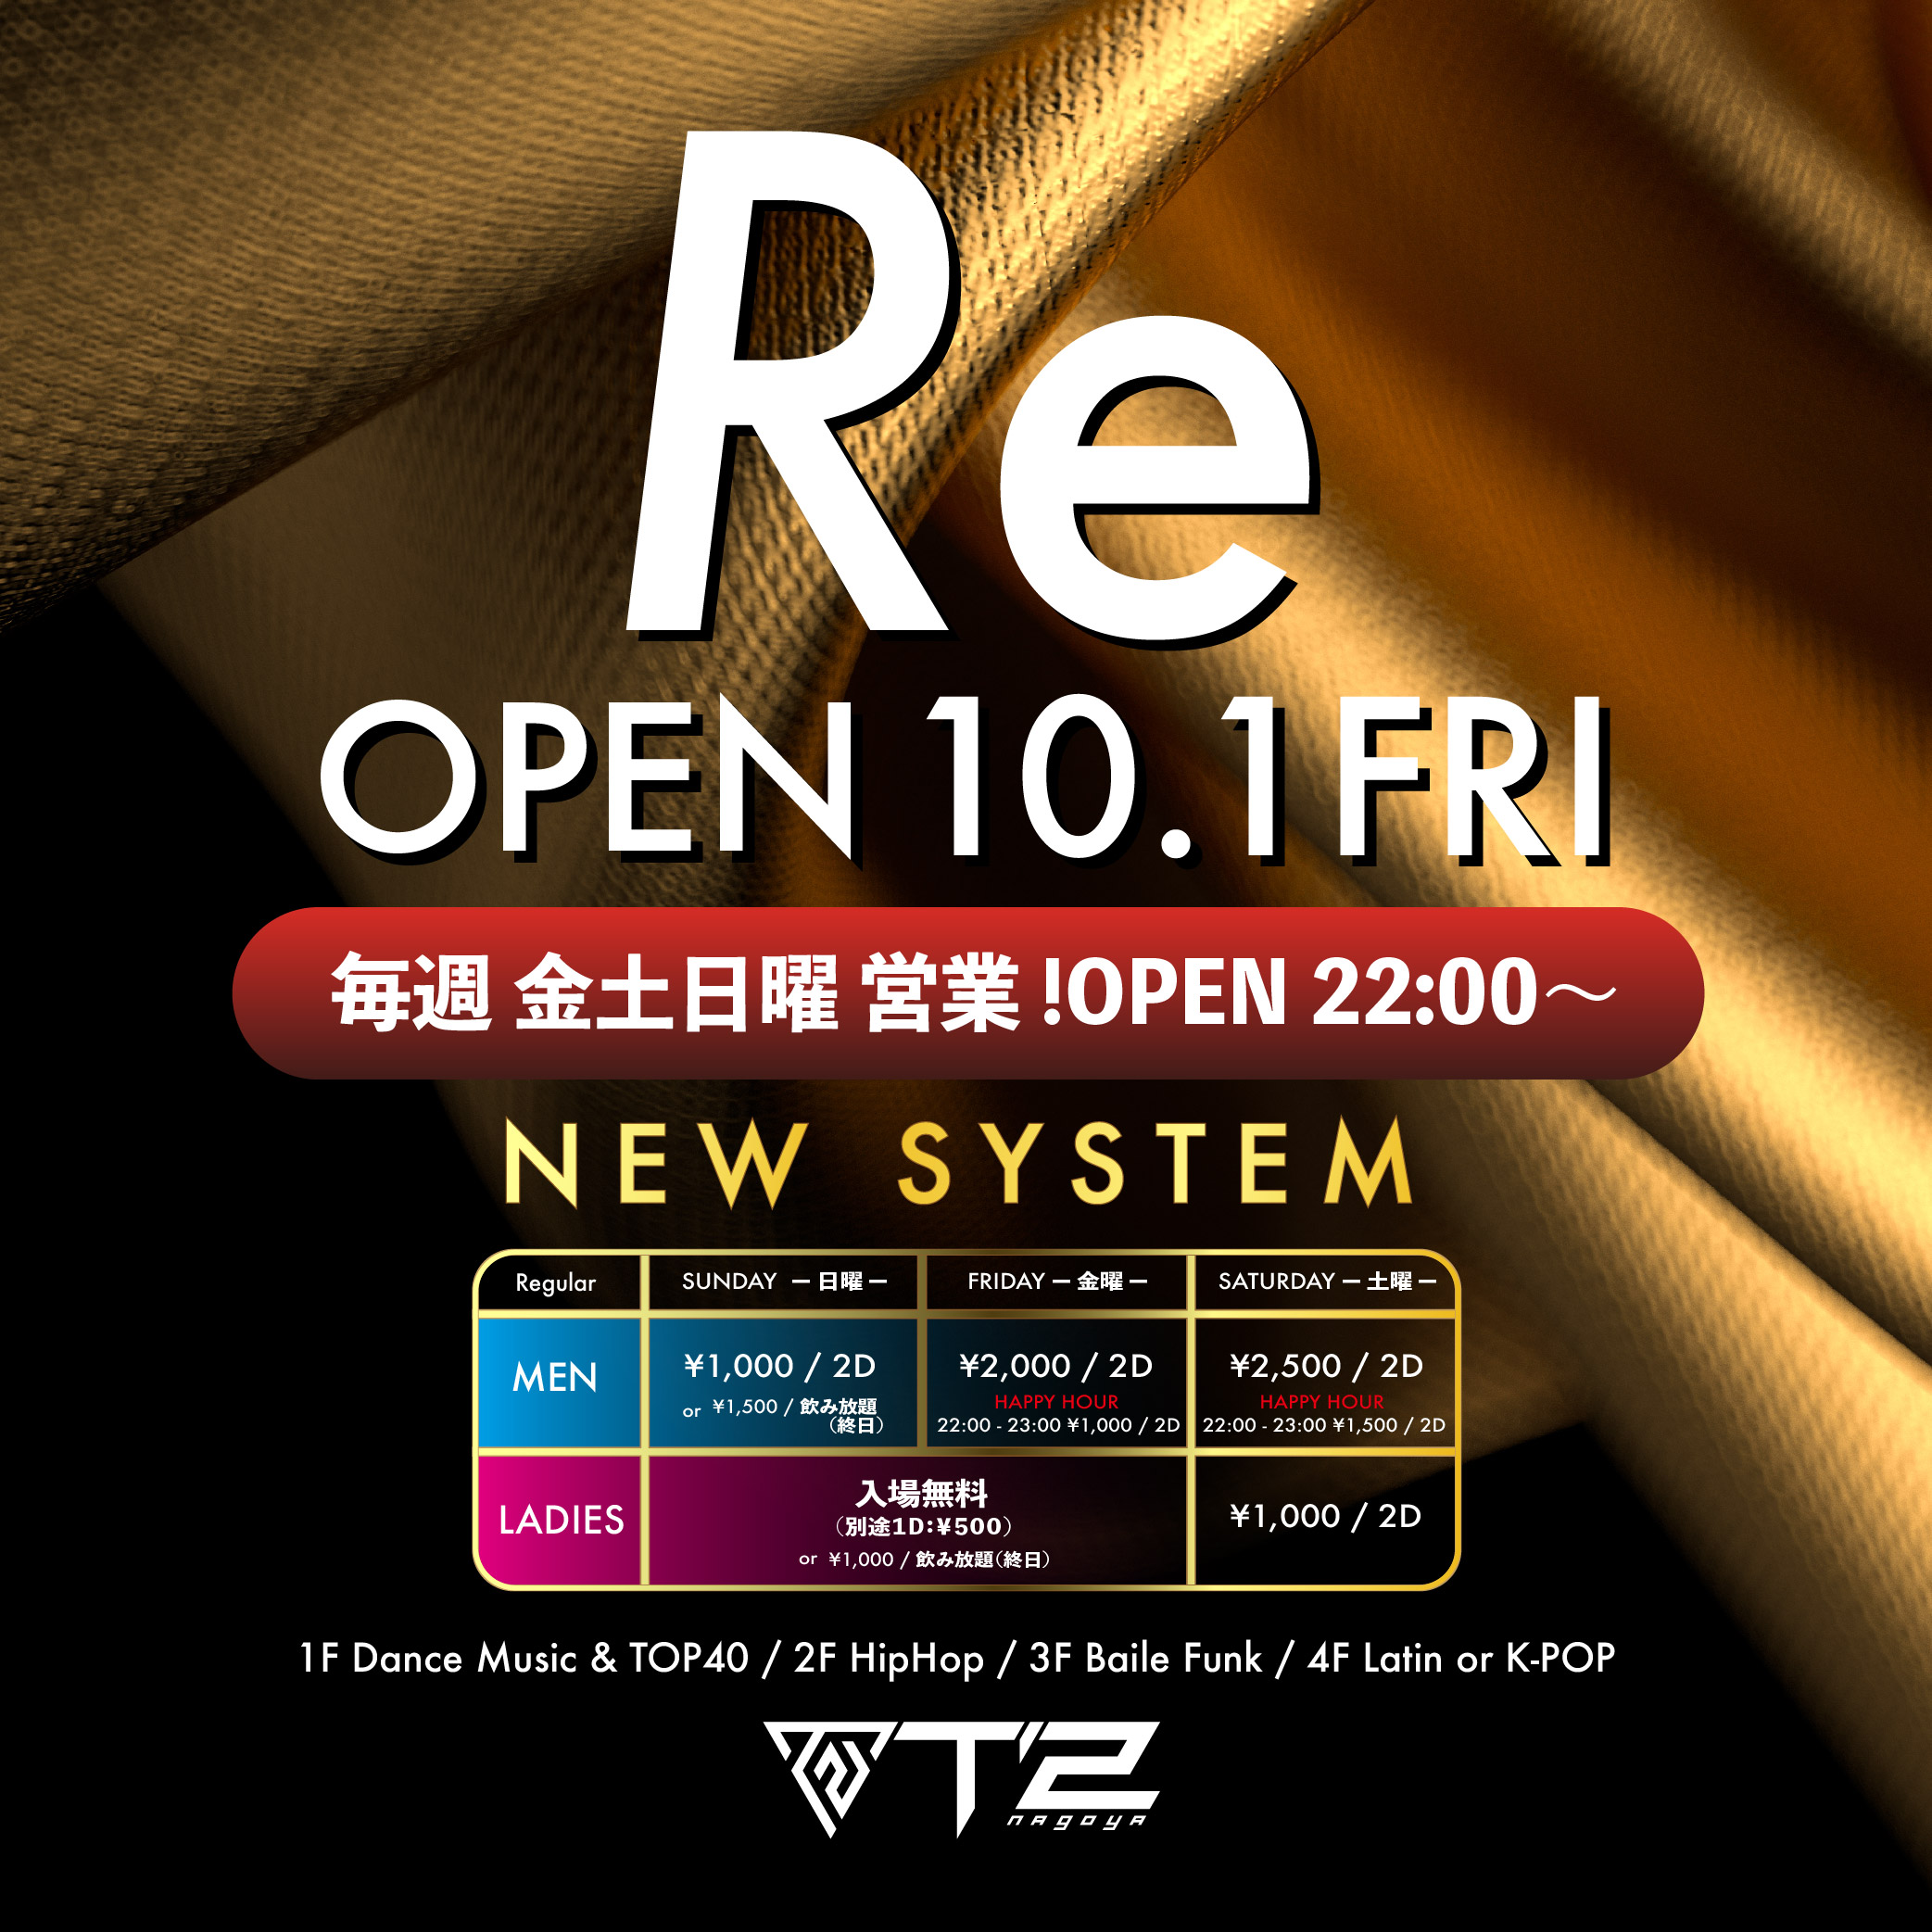 Re OPEN 10.1FRI 毎週金土日営業開始のお知らせ